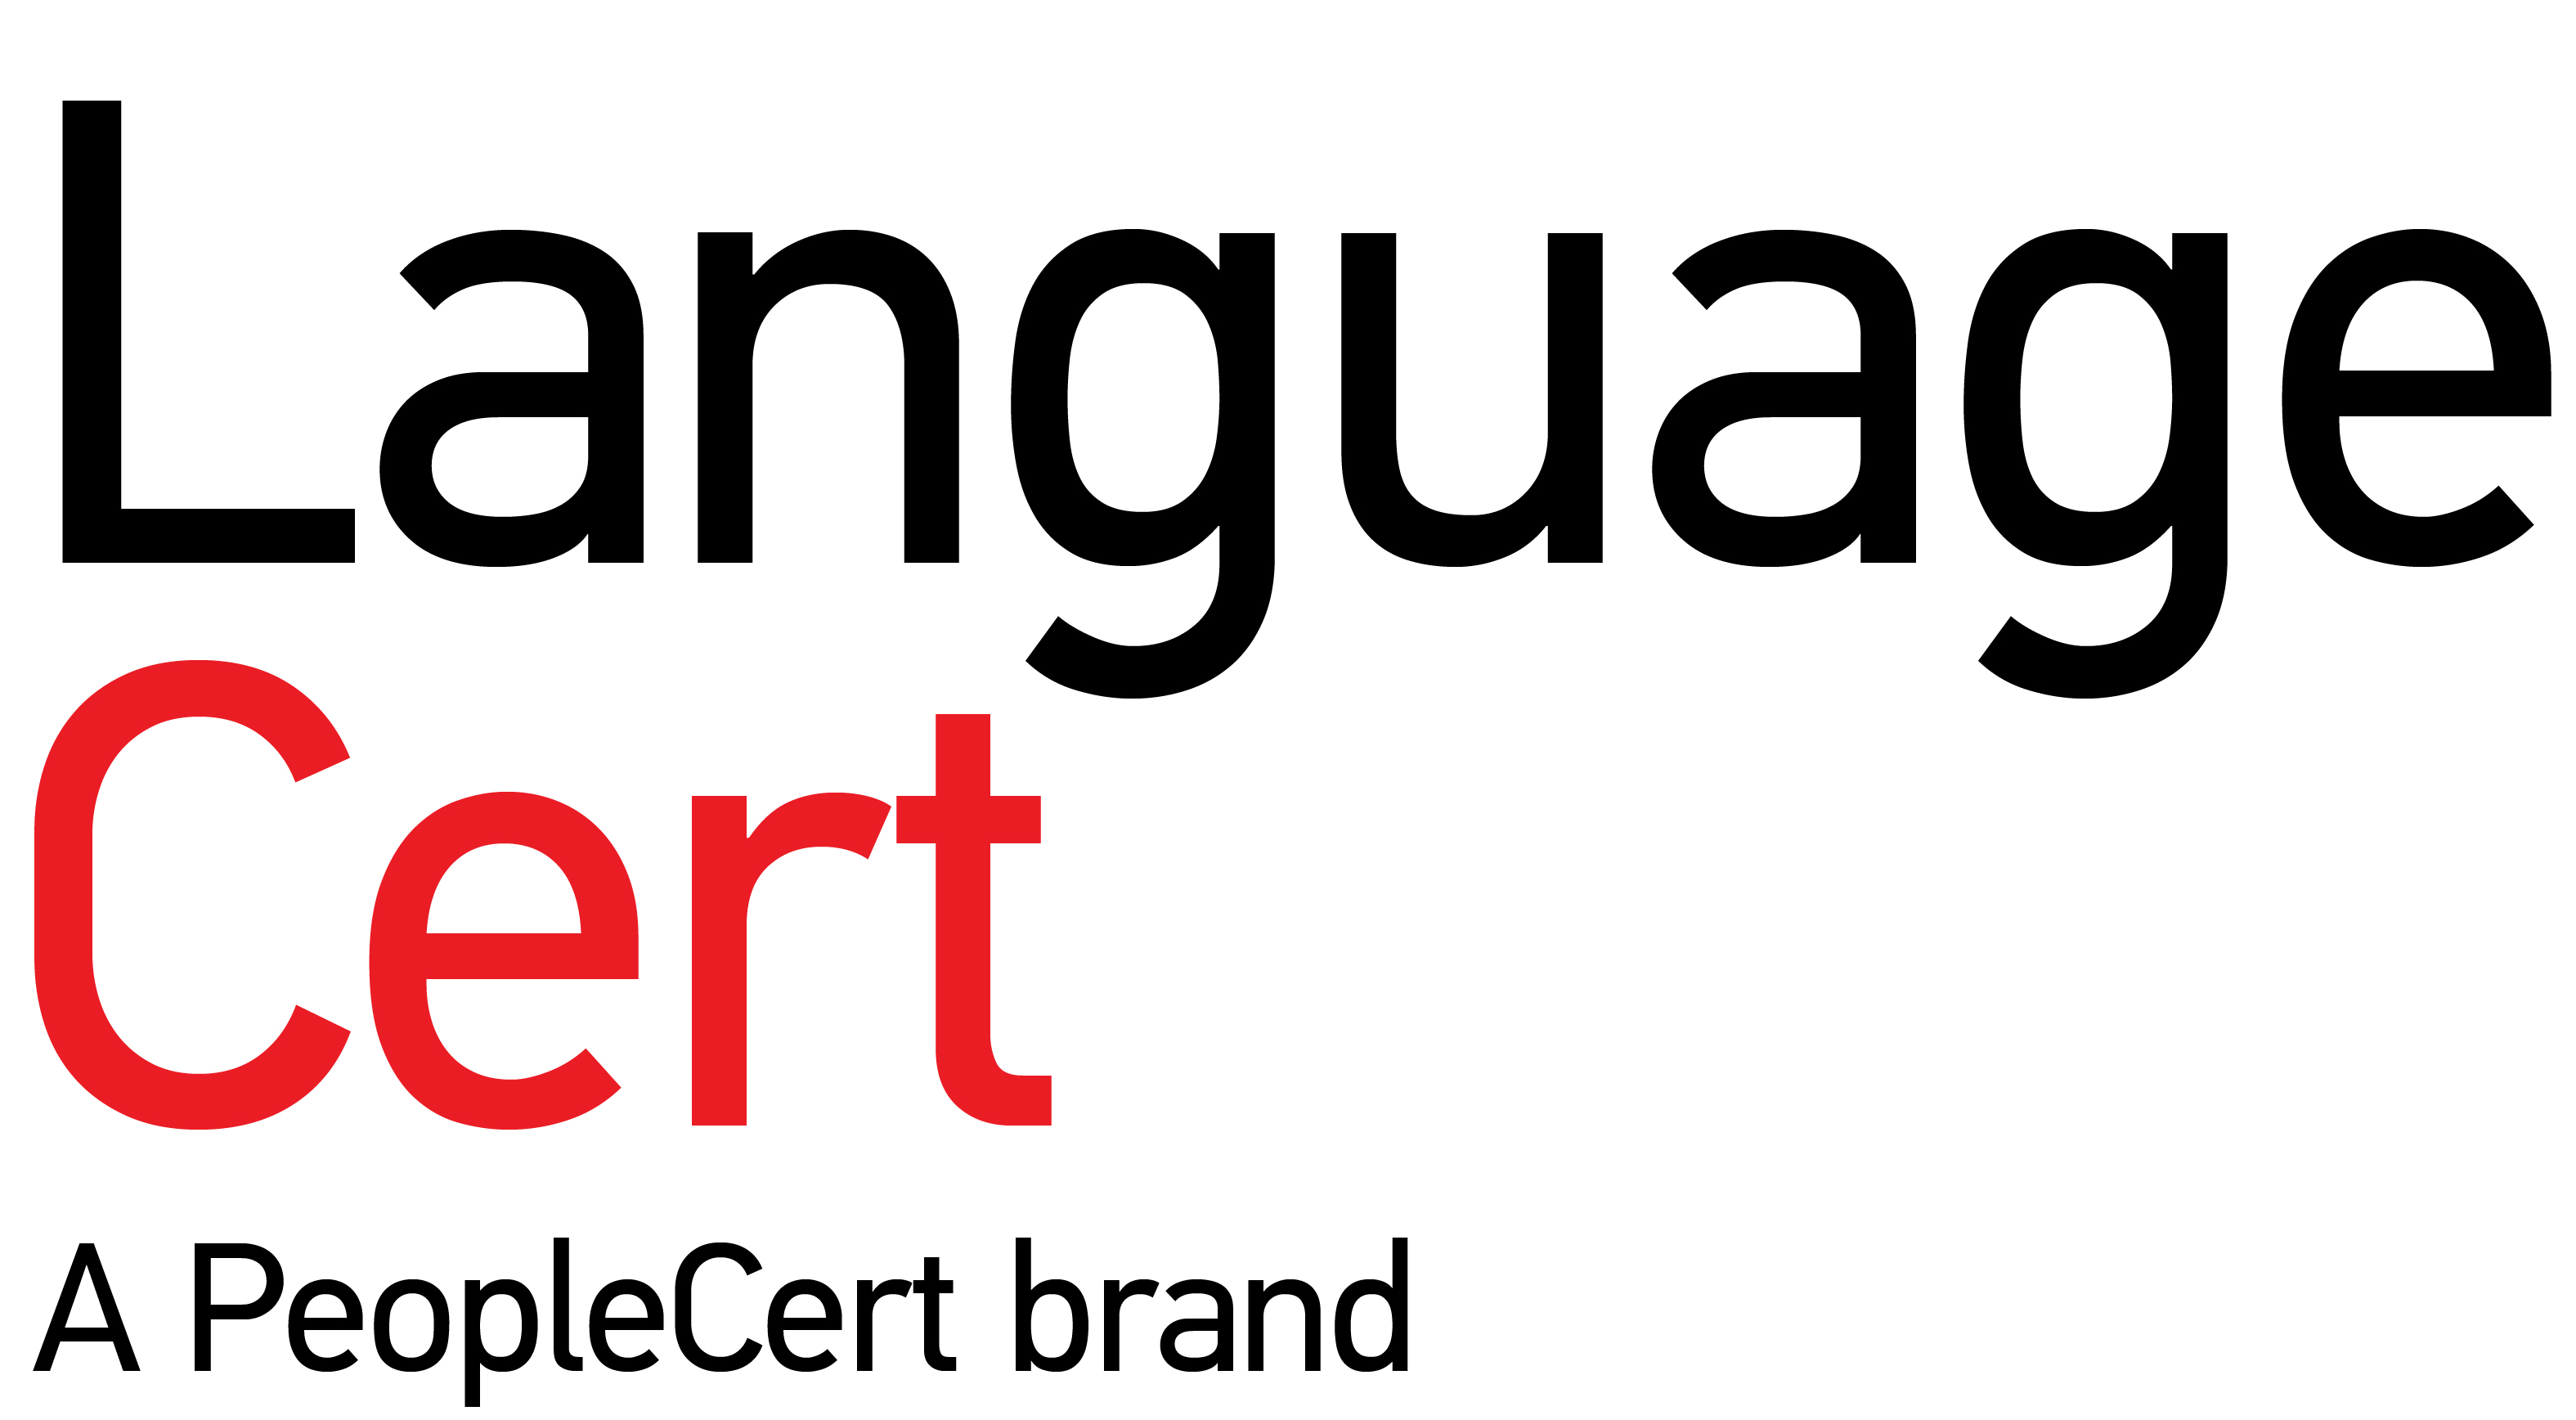 LanguageCert logo jpeg.jpg